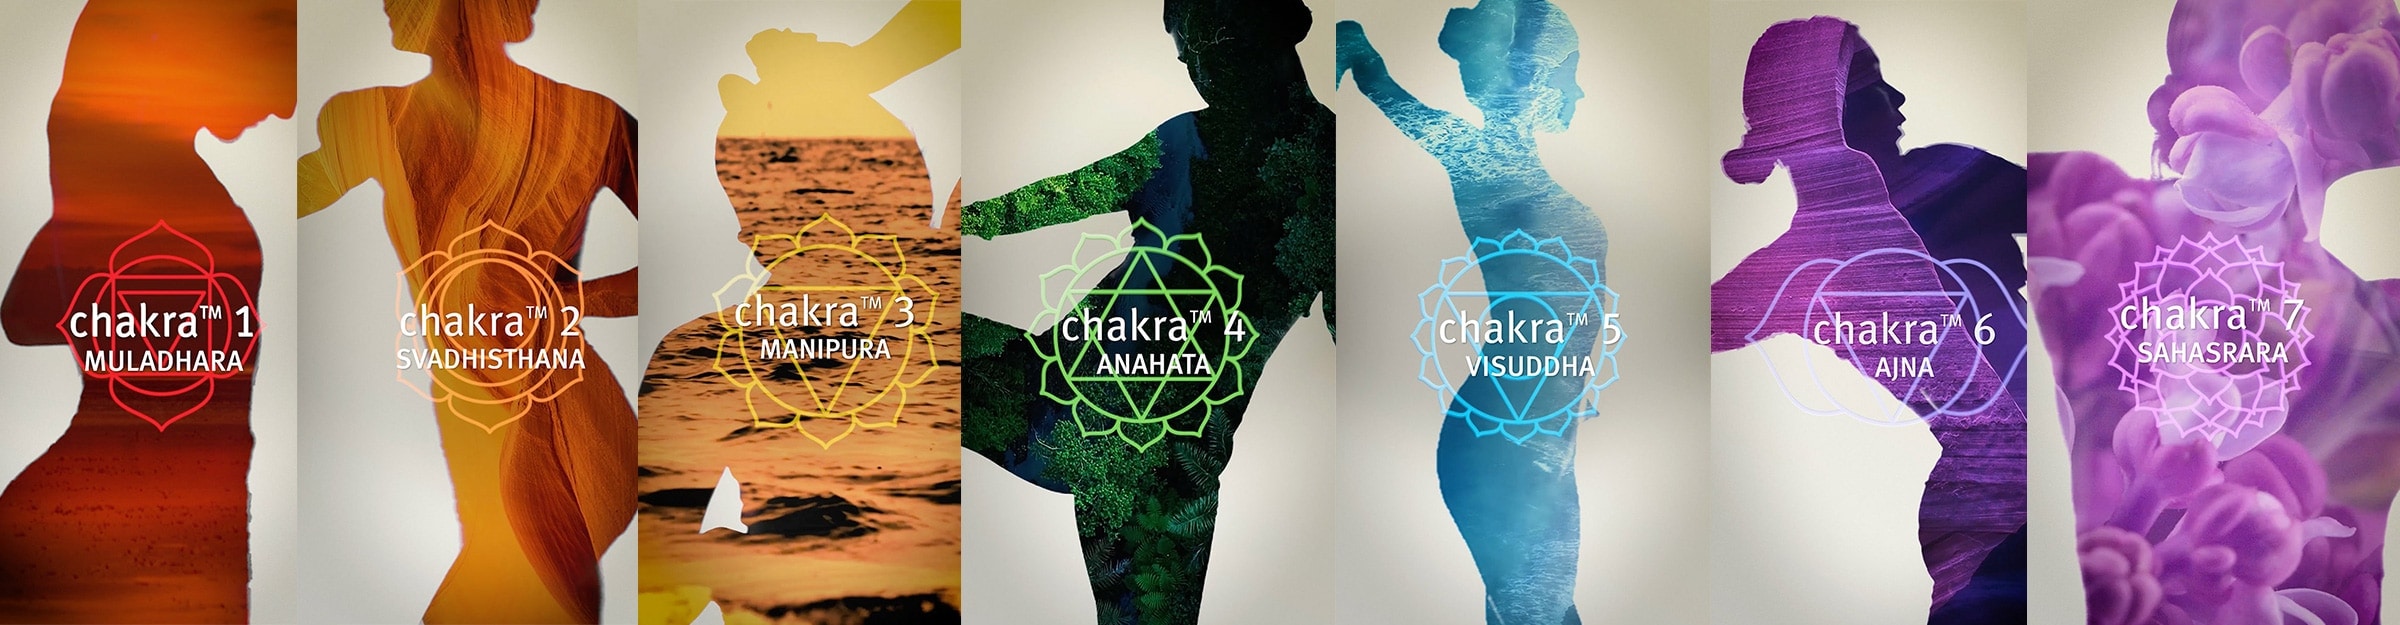 En savoir plus sur les chakras